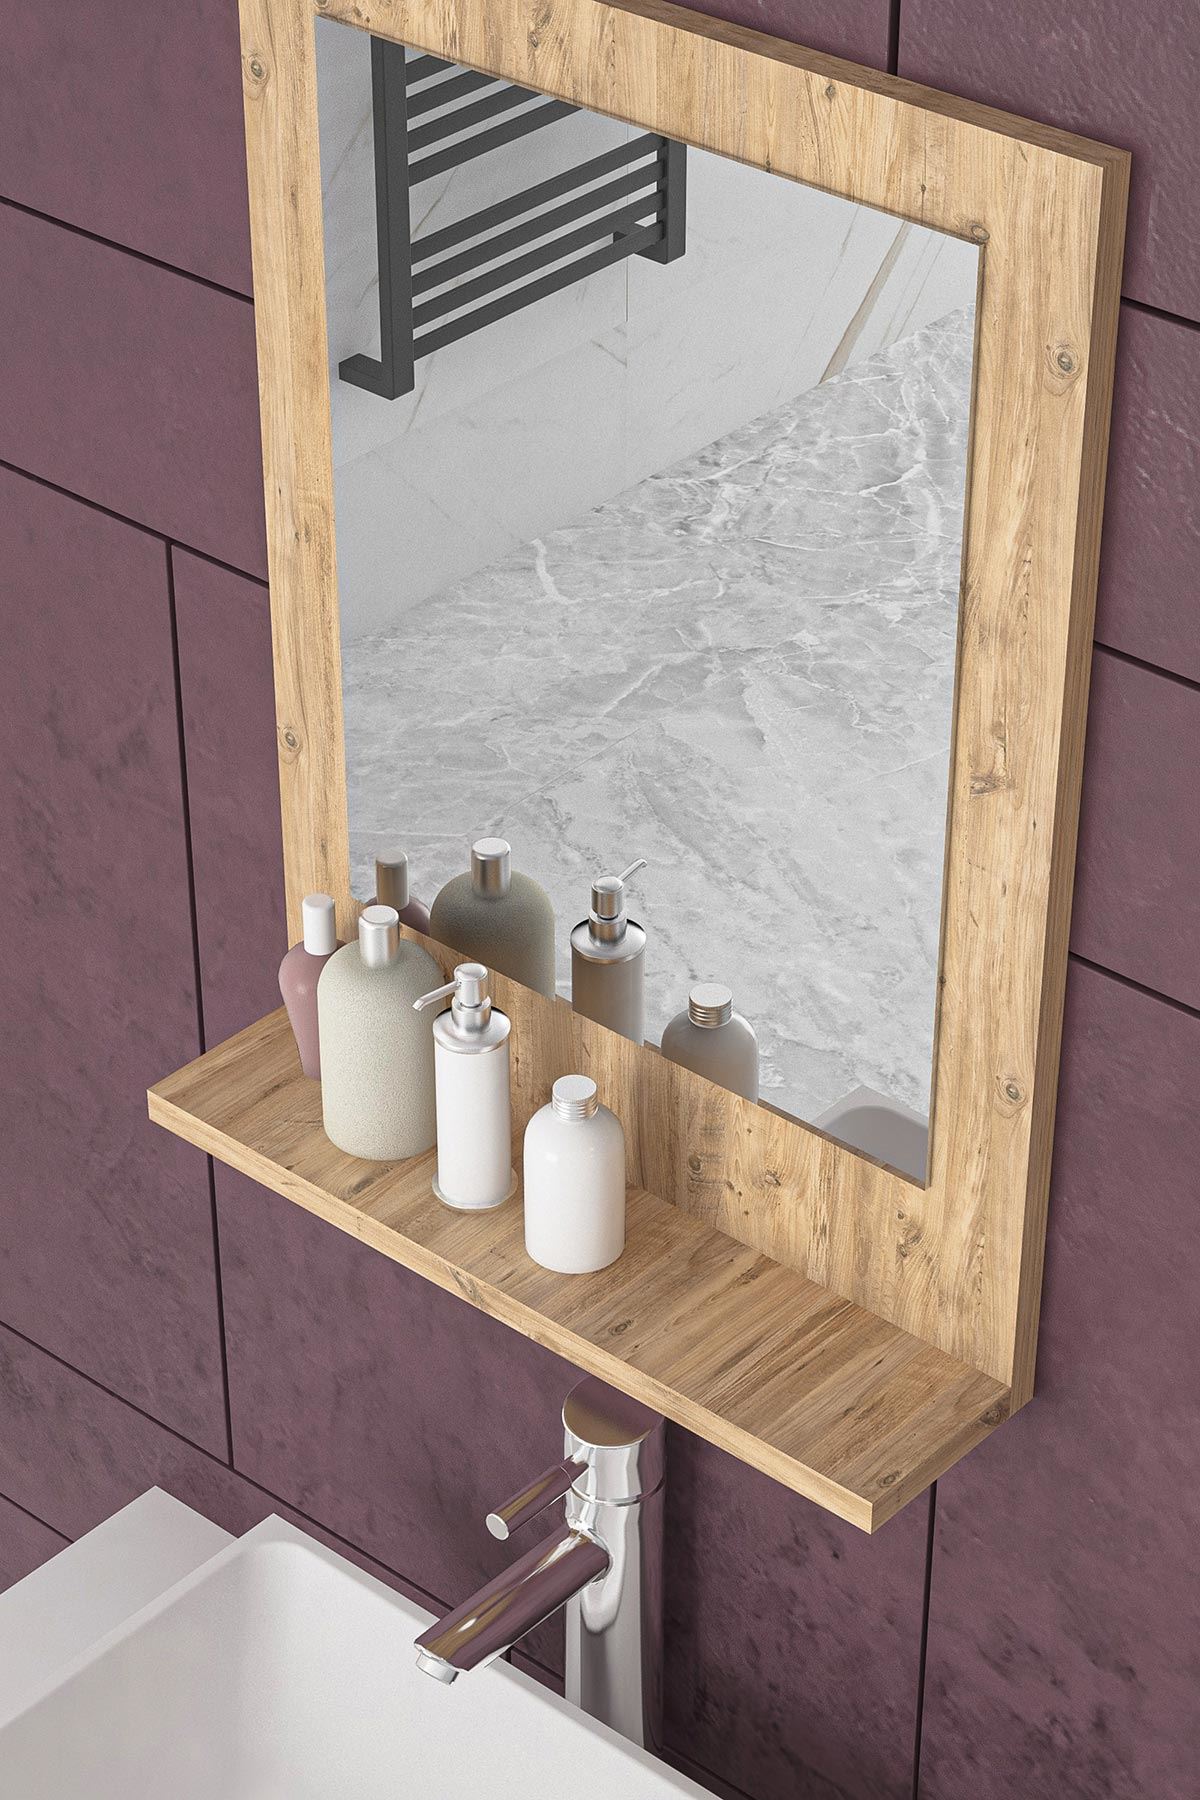 Bofigo 45x60 Cm Verona Banyo Rafı Lavabo Rafı Aynalı Raf Banyo Aynası Çam